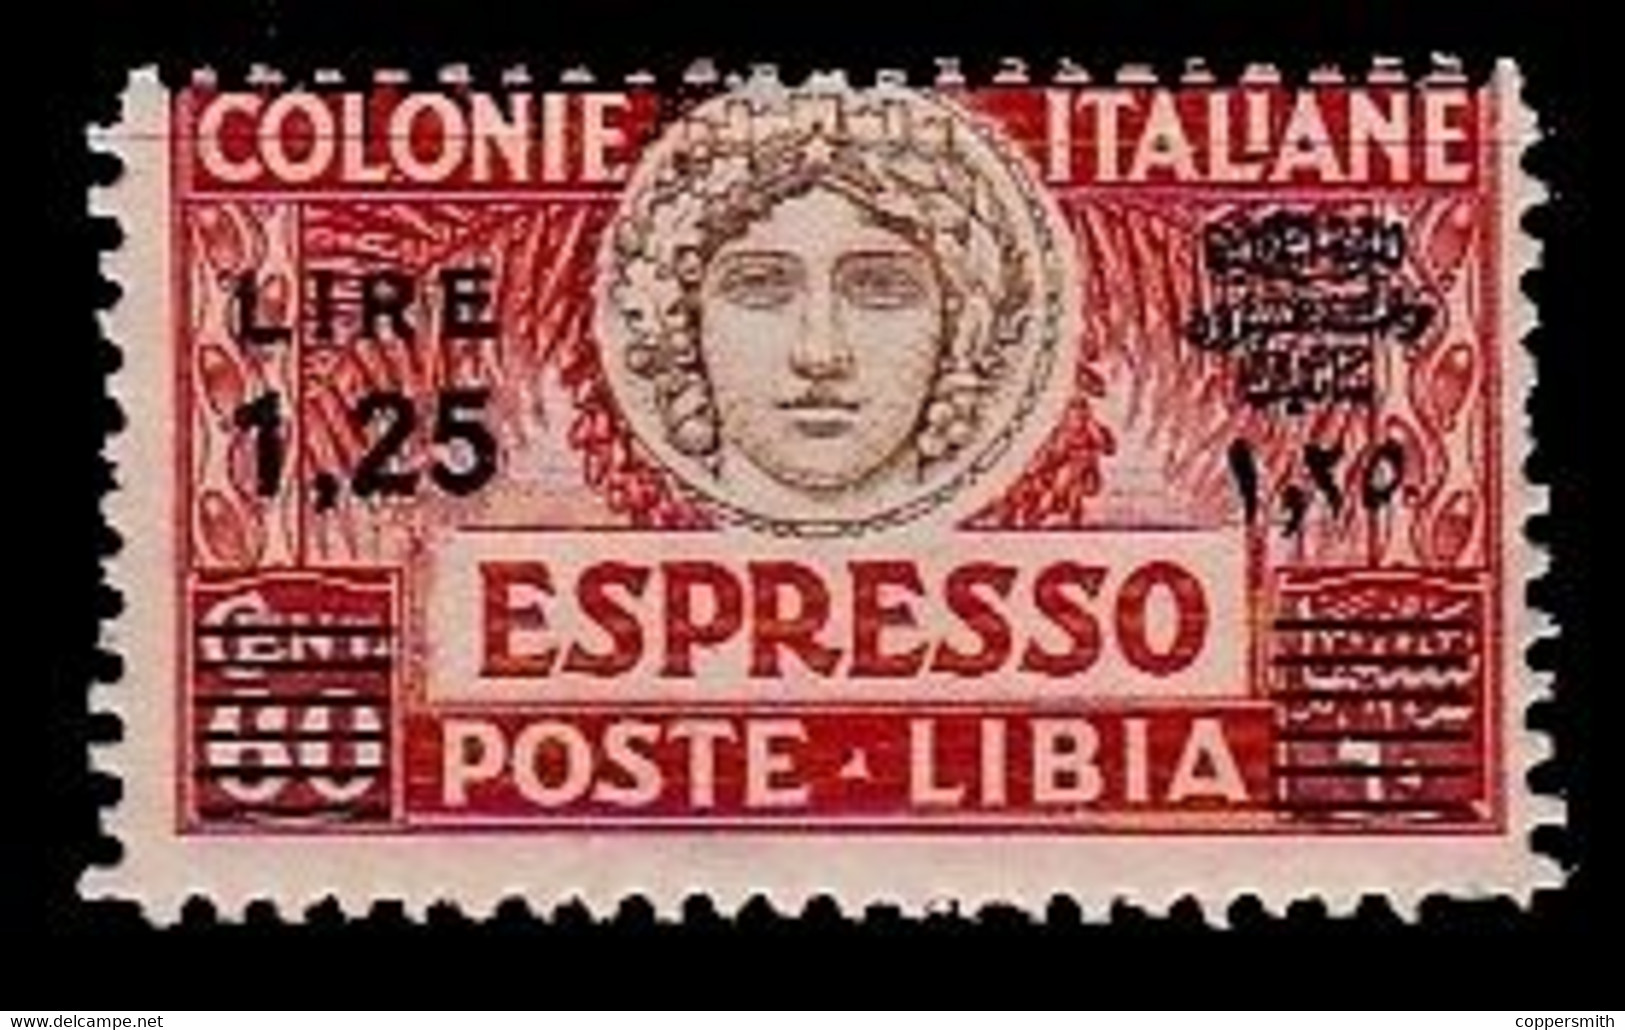 (003) Italie / Italy / Libya  Express Overprint / Surcharge / Eilmarke Aufdruck ** / Mnh  Michel 65 AC - Libyen